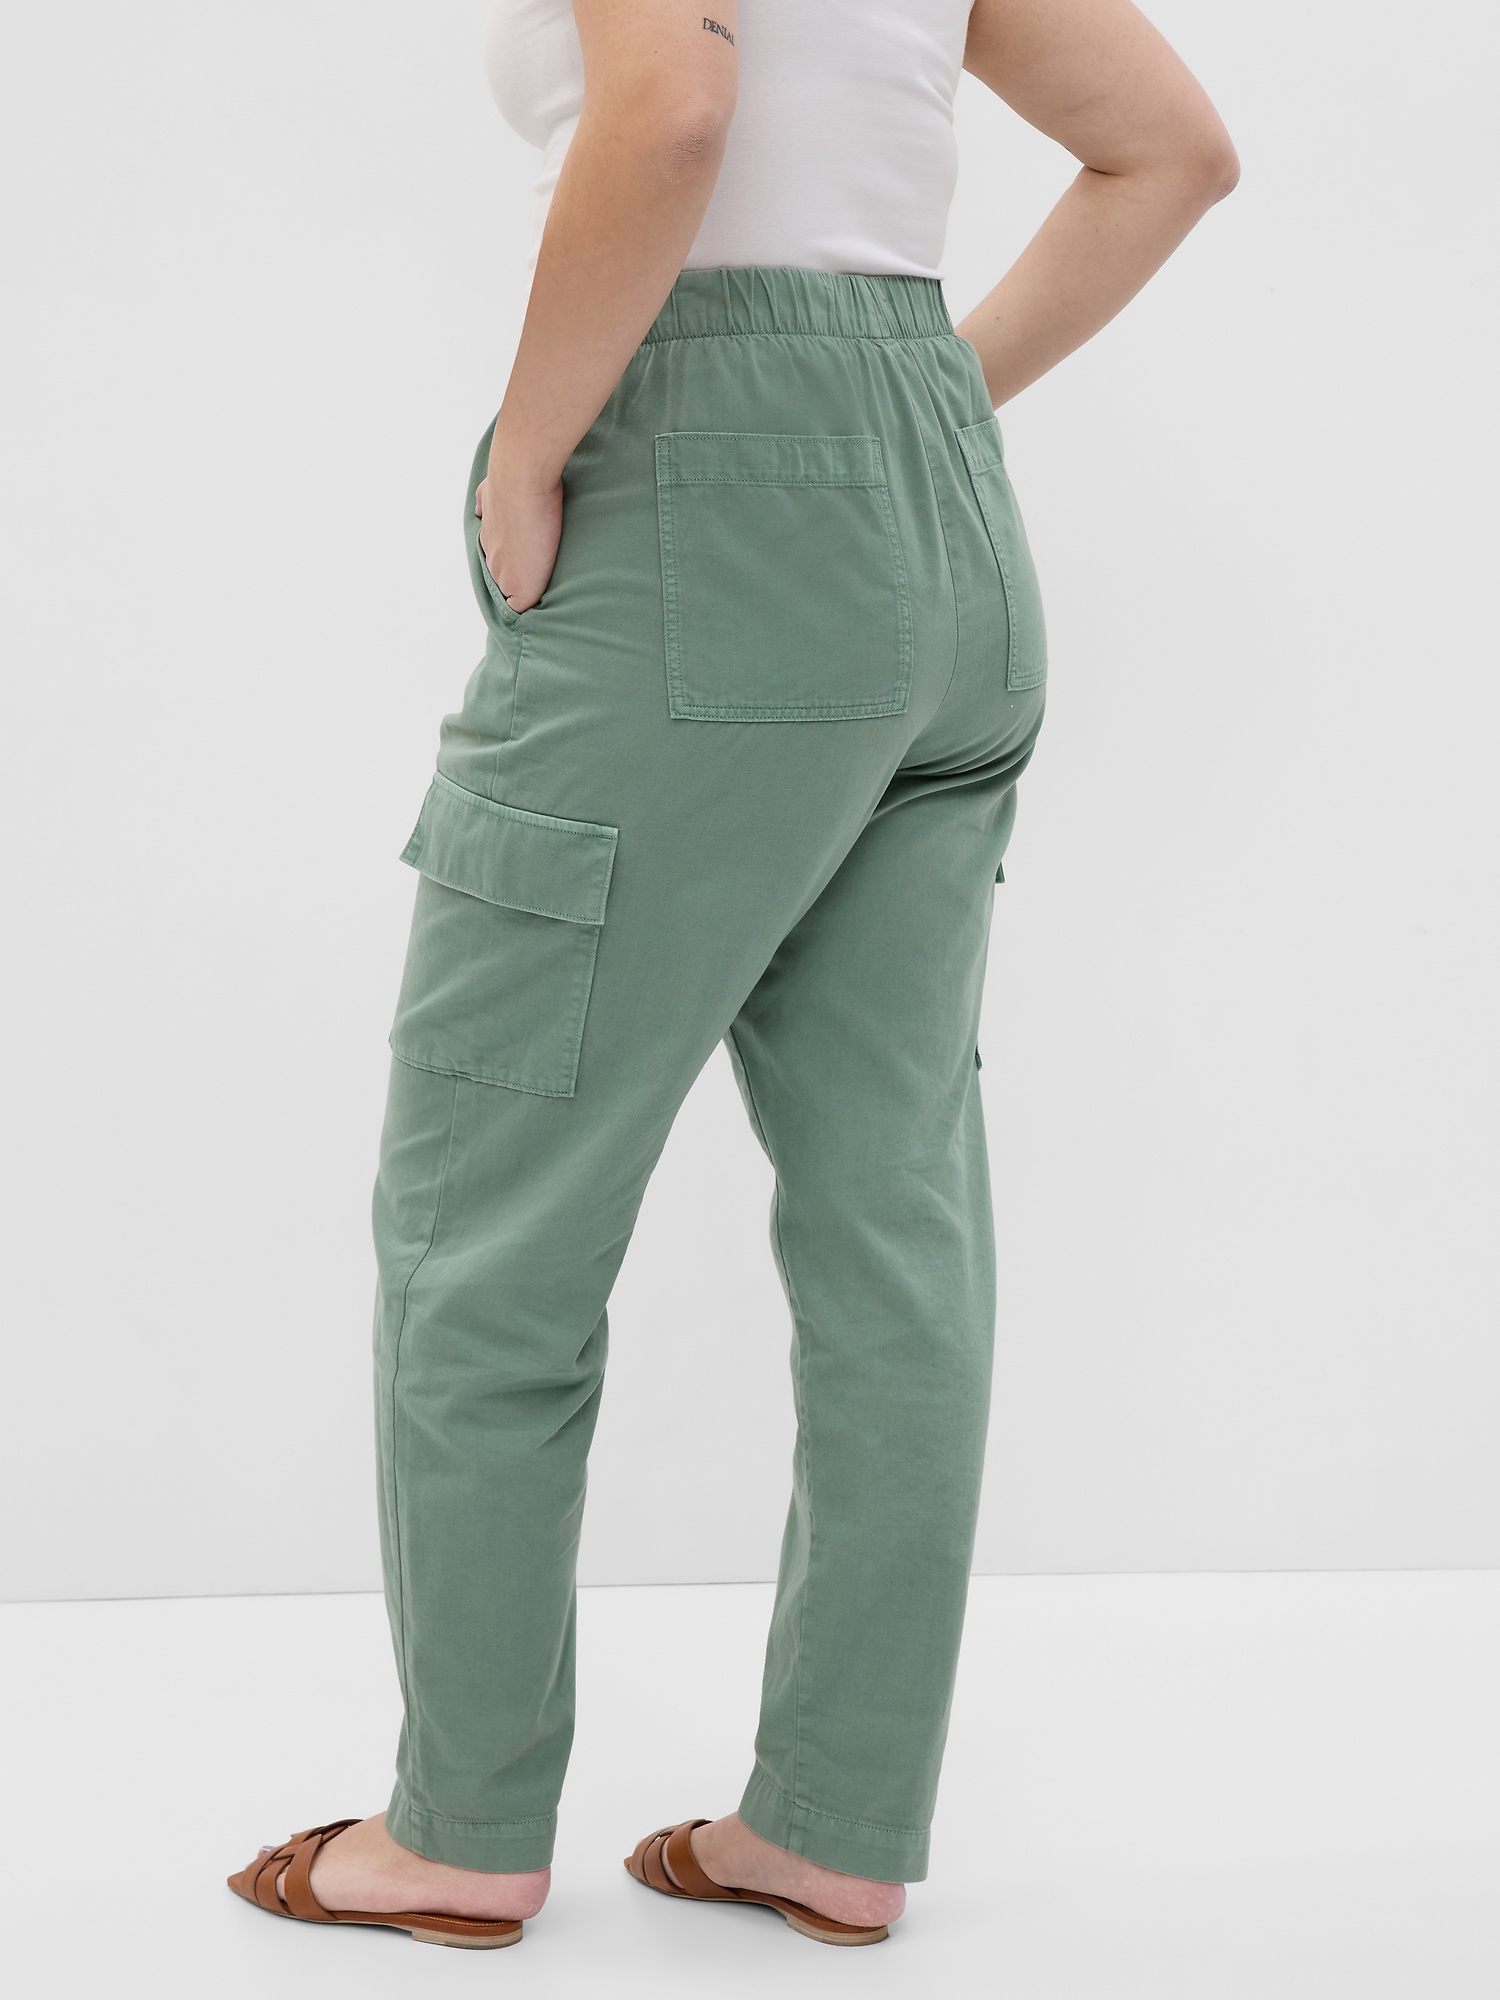 Gap Amazon.com Women's Pants on Sale | ShopStyle